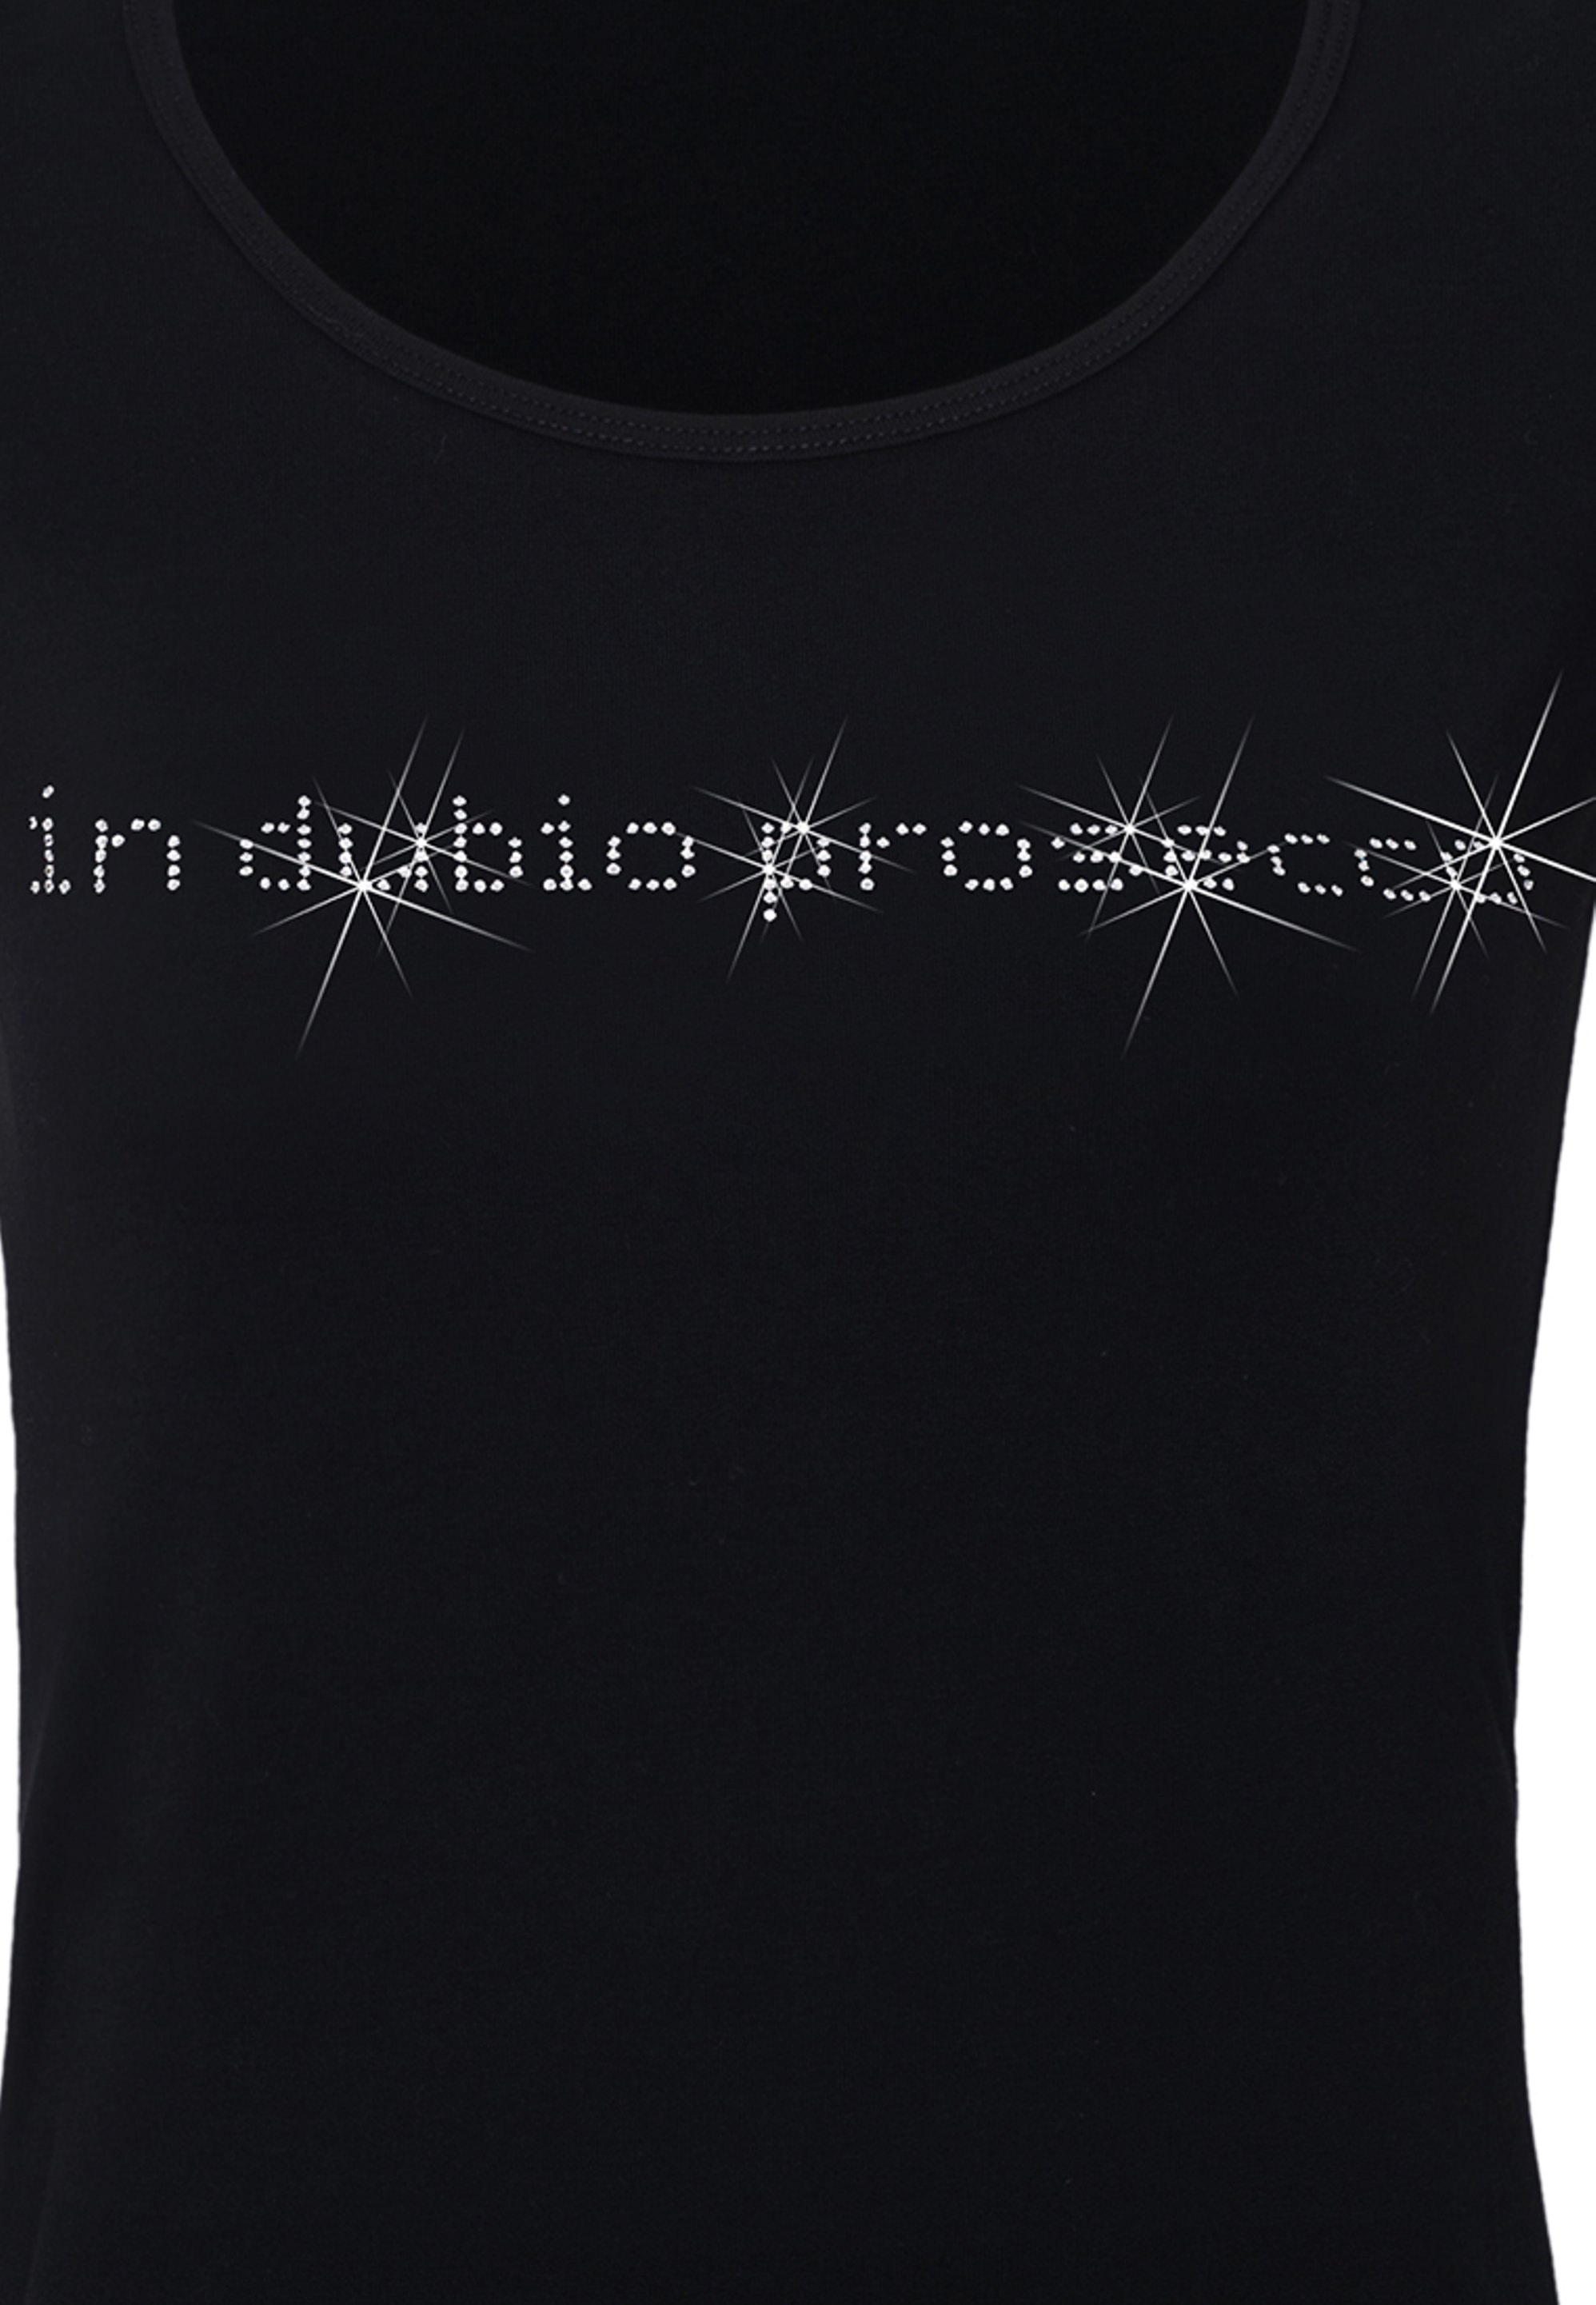 In Dubio Prosecco Shirt